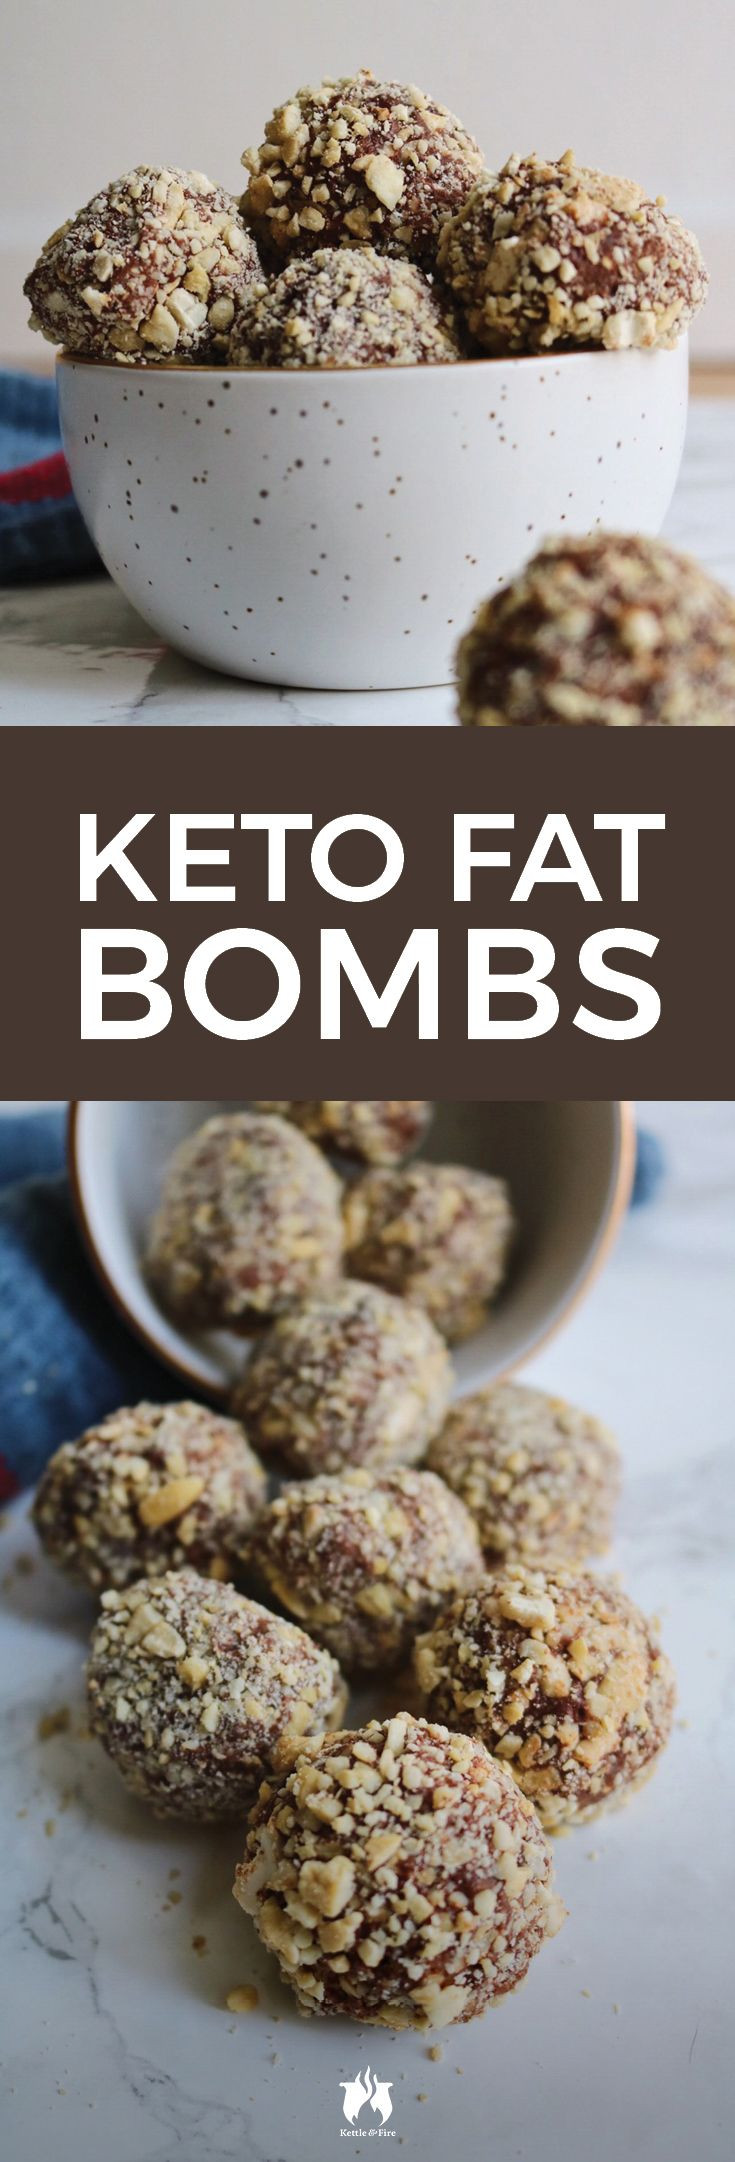 Keto Diet Snacks Fat Bombs
 The 25 best Fat s ideas on Pinterest